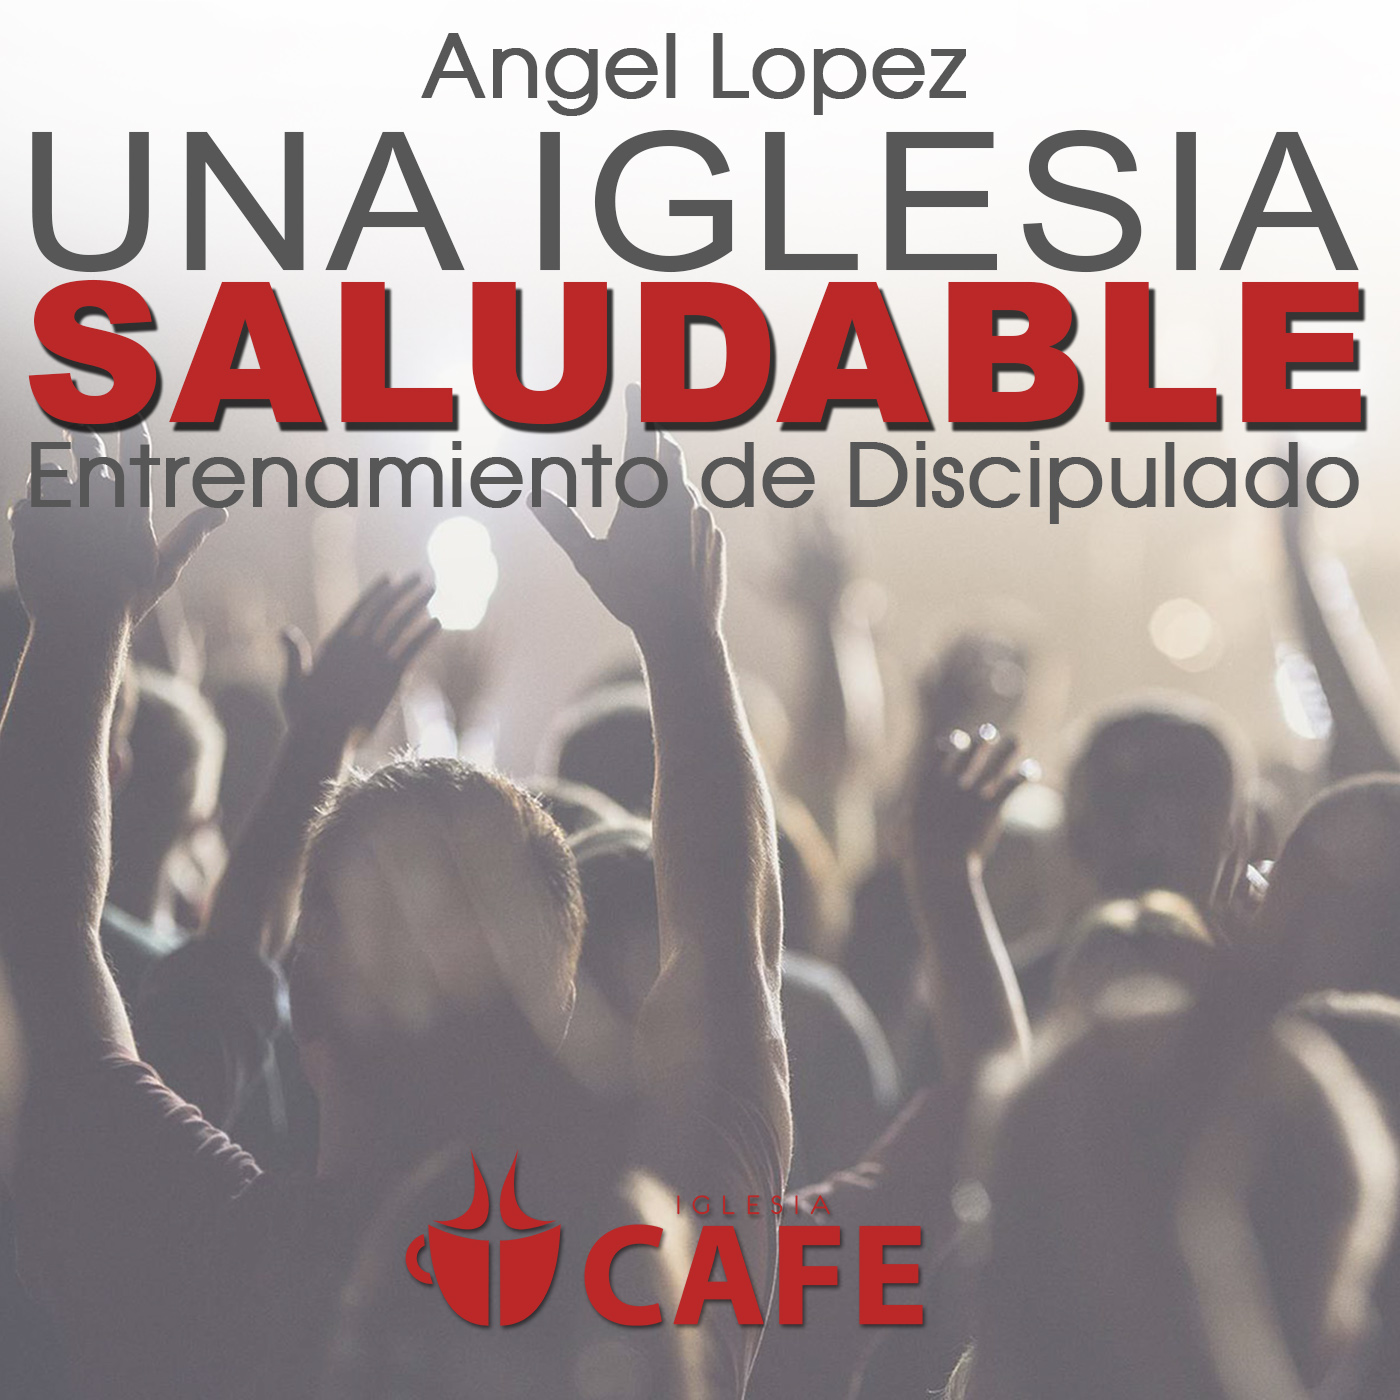 2) Angel Lopez - El Mensaje y Misión de la Iglesia